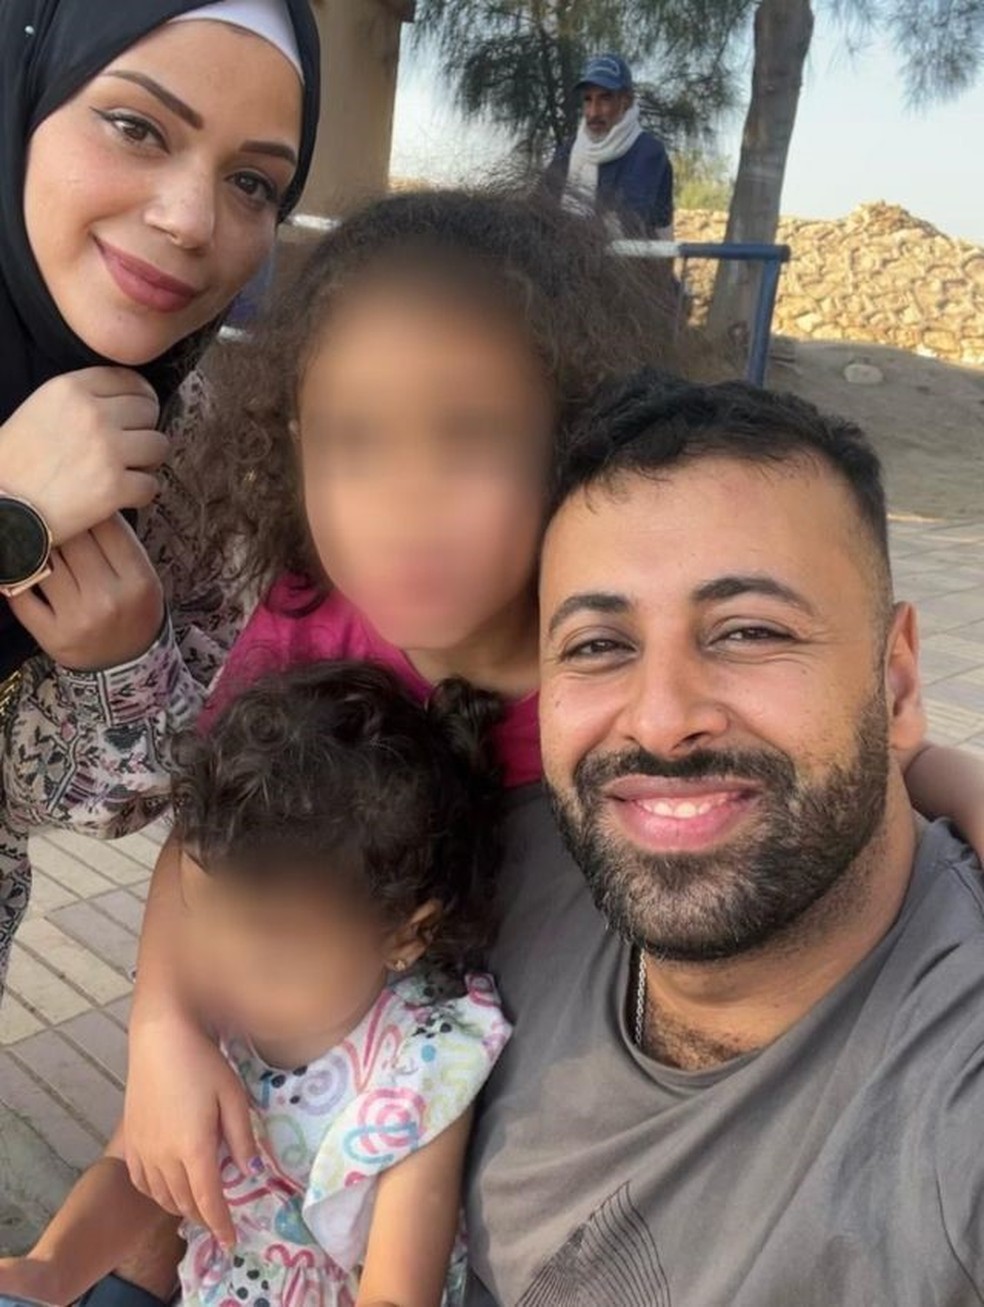 Papai, vão jogar bomba': o brasileiro que viajou a passeio com a família a  Gaza e agora luta para deixar a região - BBC News Brasil